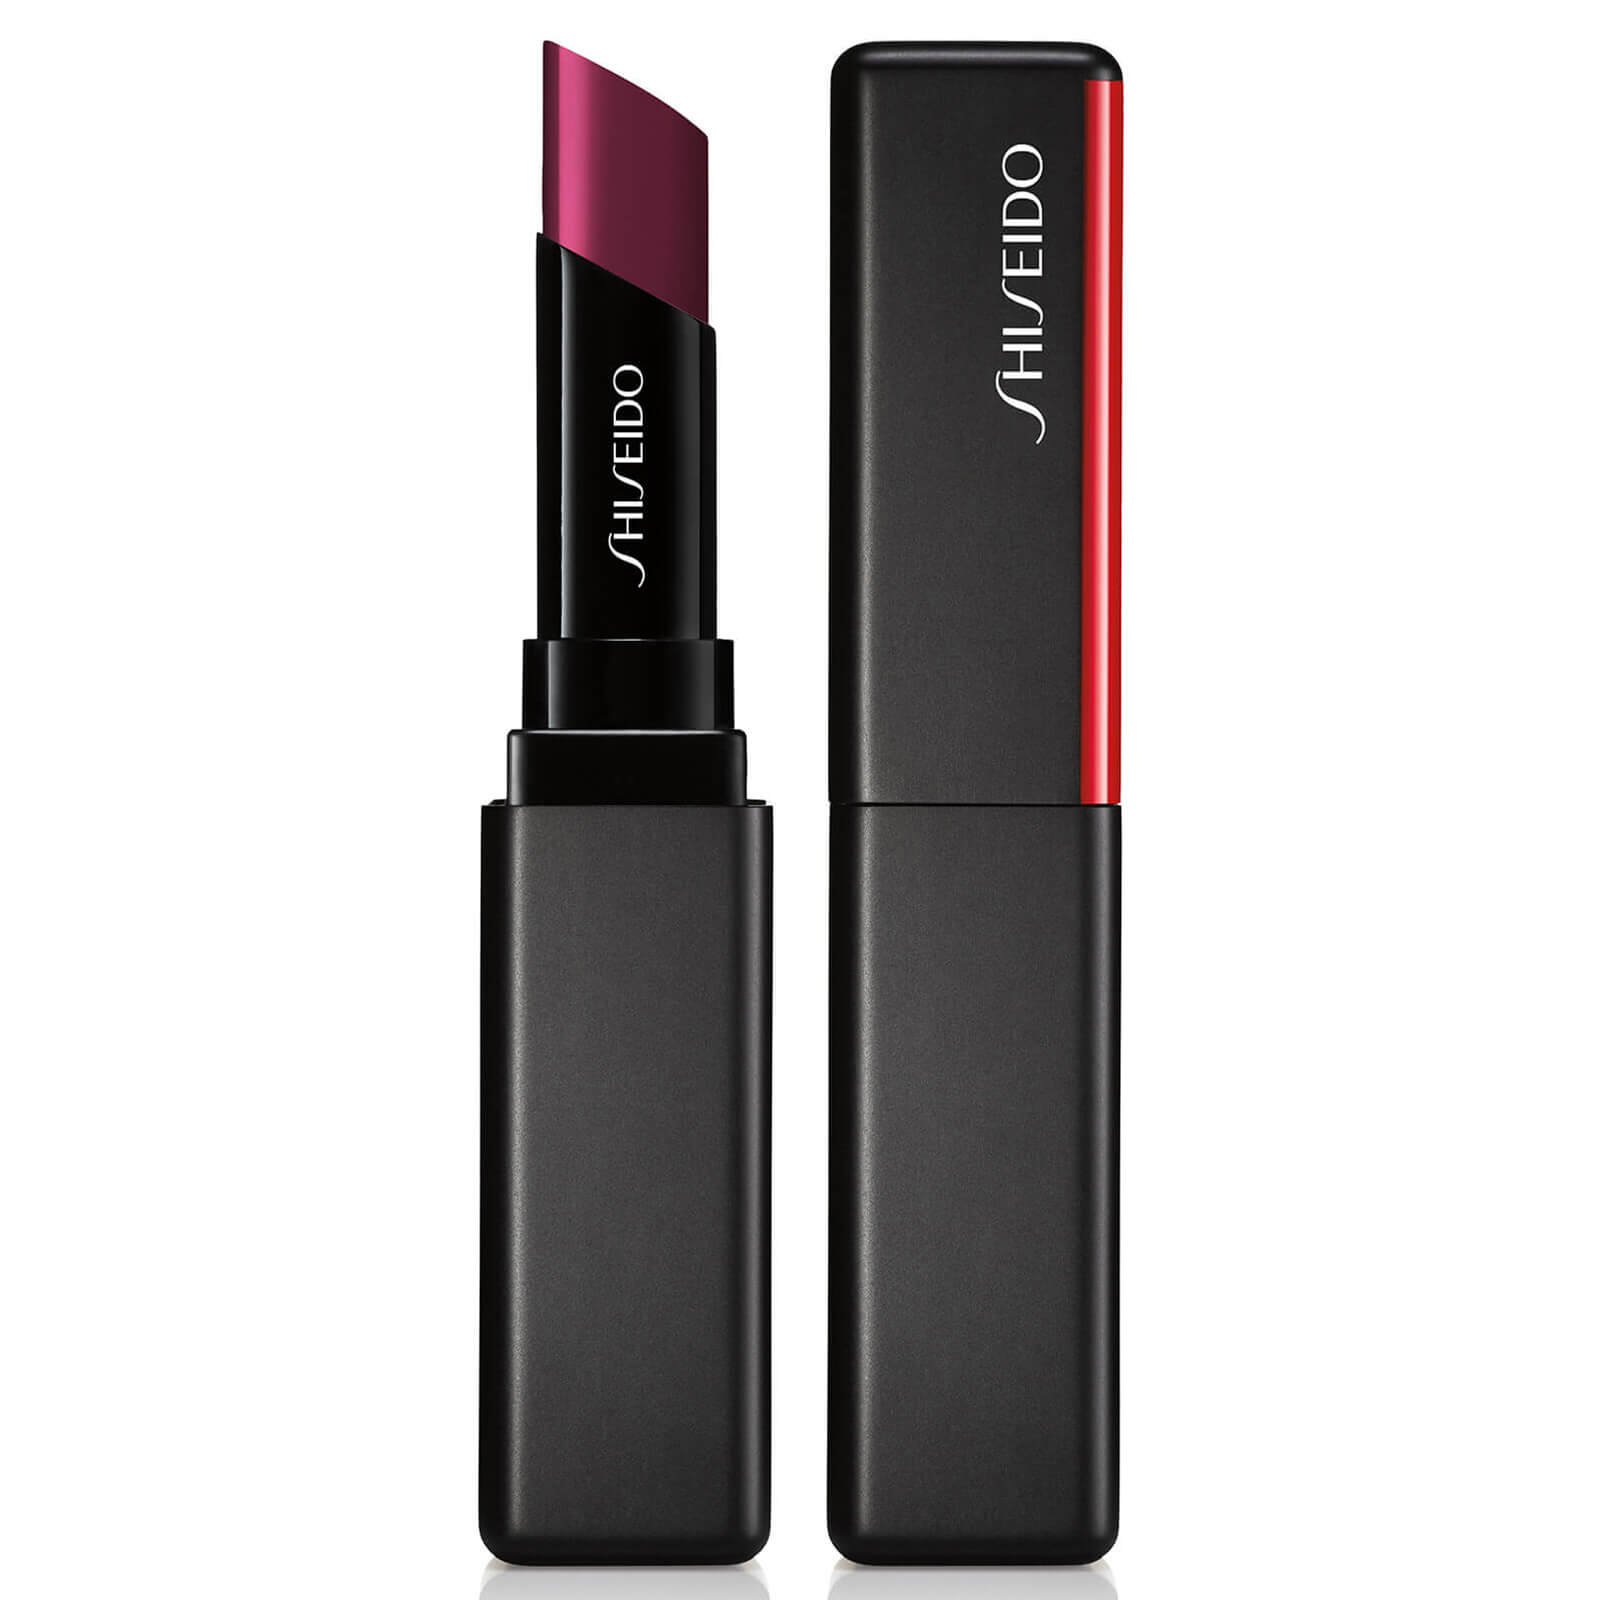 Shiseido VisionAiry Gel Lipstick (verschiedene Farbtöne) - Lipstick Vortex 216 von Shiseido